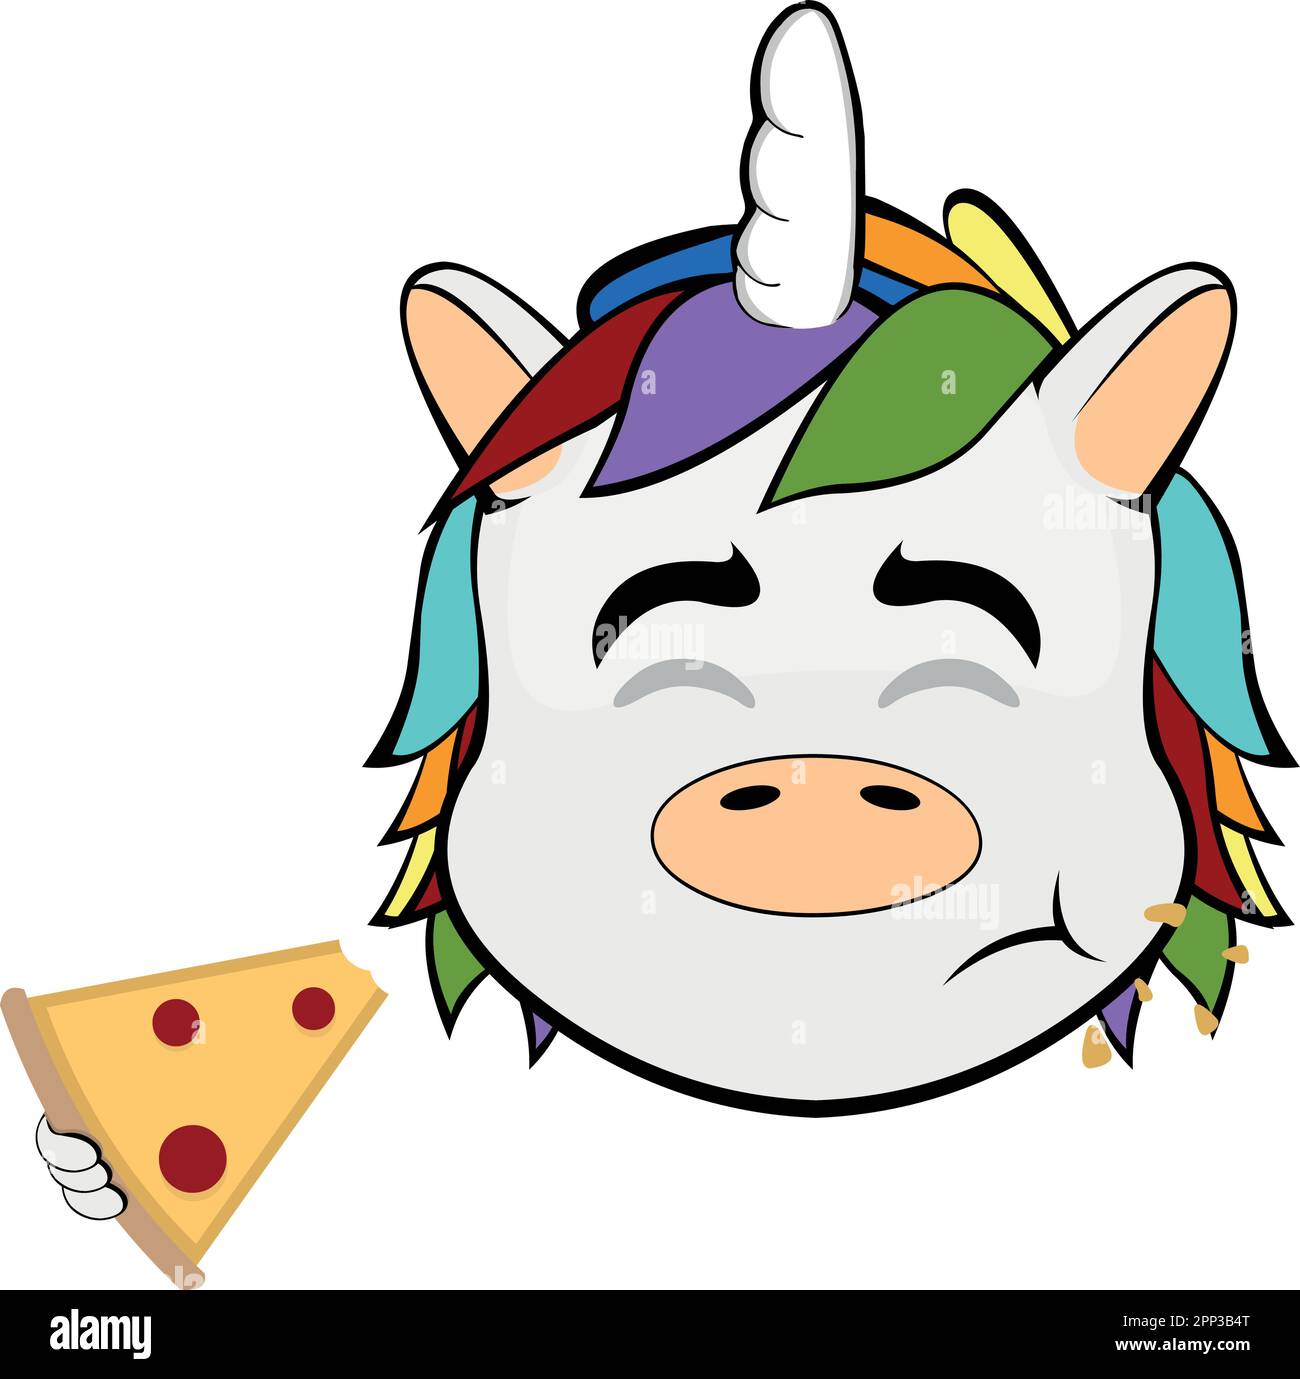 Vektordarstellung Cartoon-Gesicht eines Einhorns, das ein Stück Pizza isst Stock Vektor